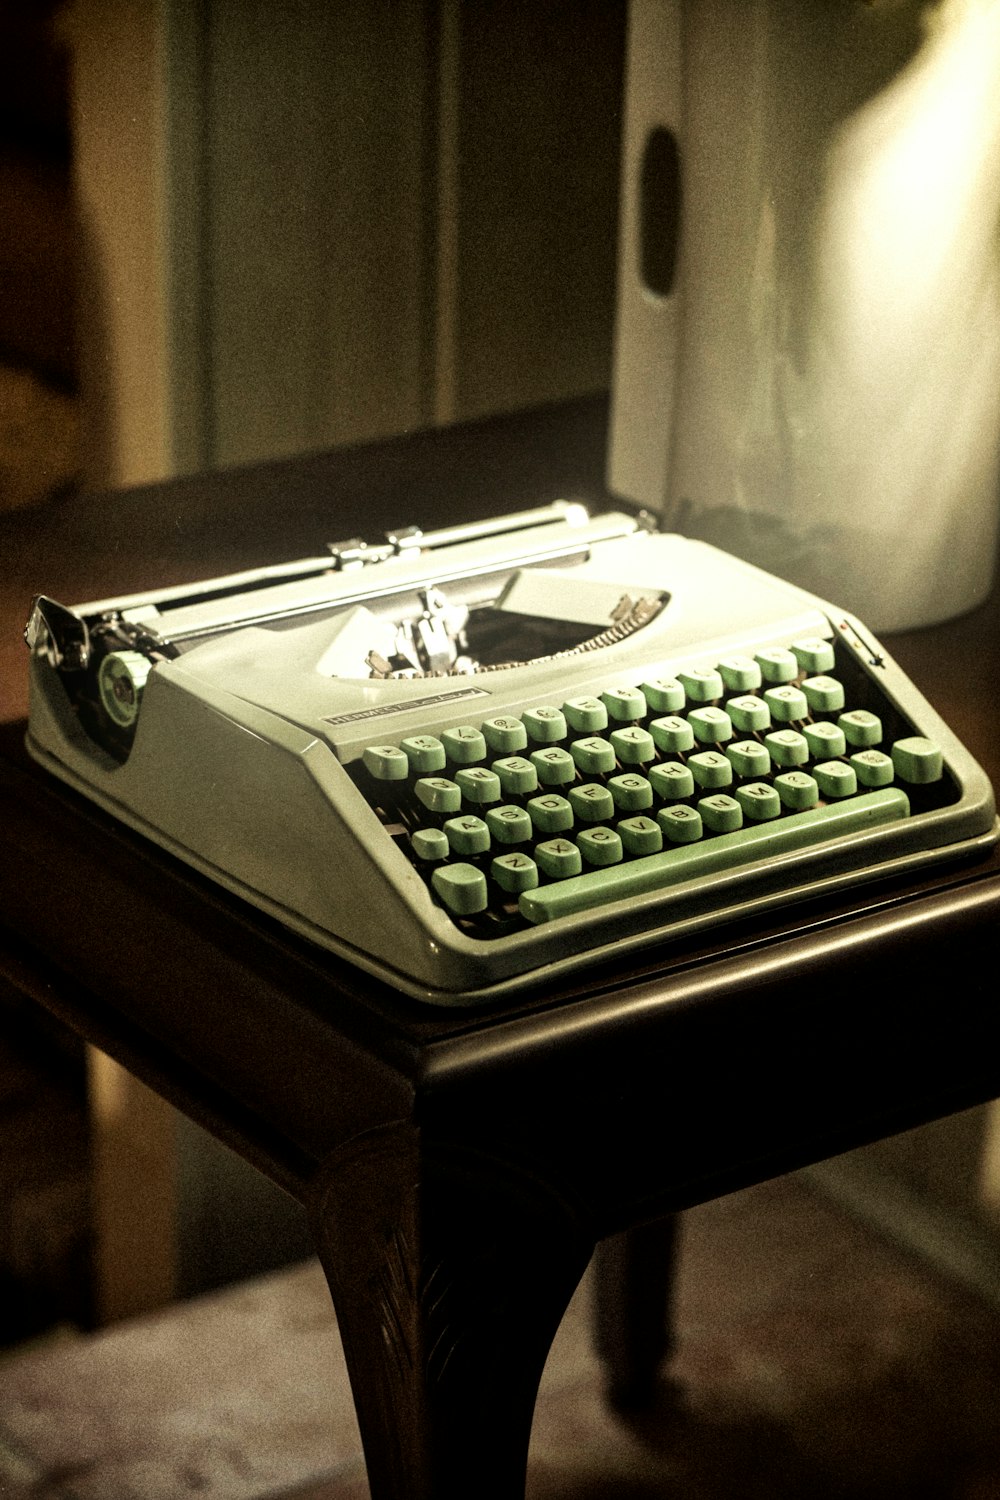 Una máquina de escribir pasada de moda sentada sobre una mesa